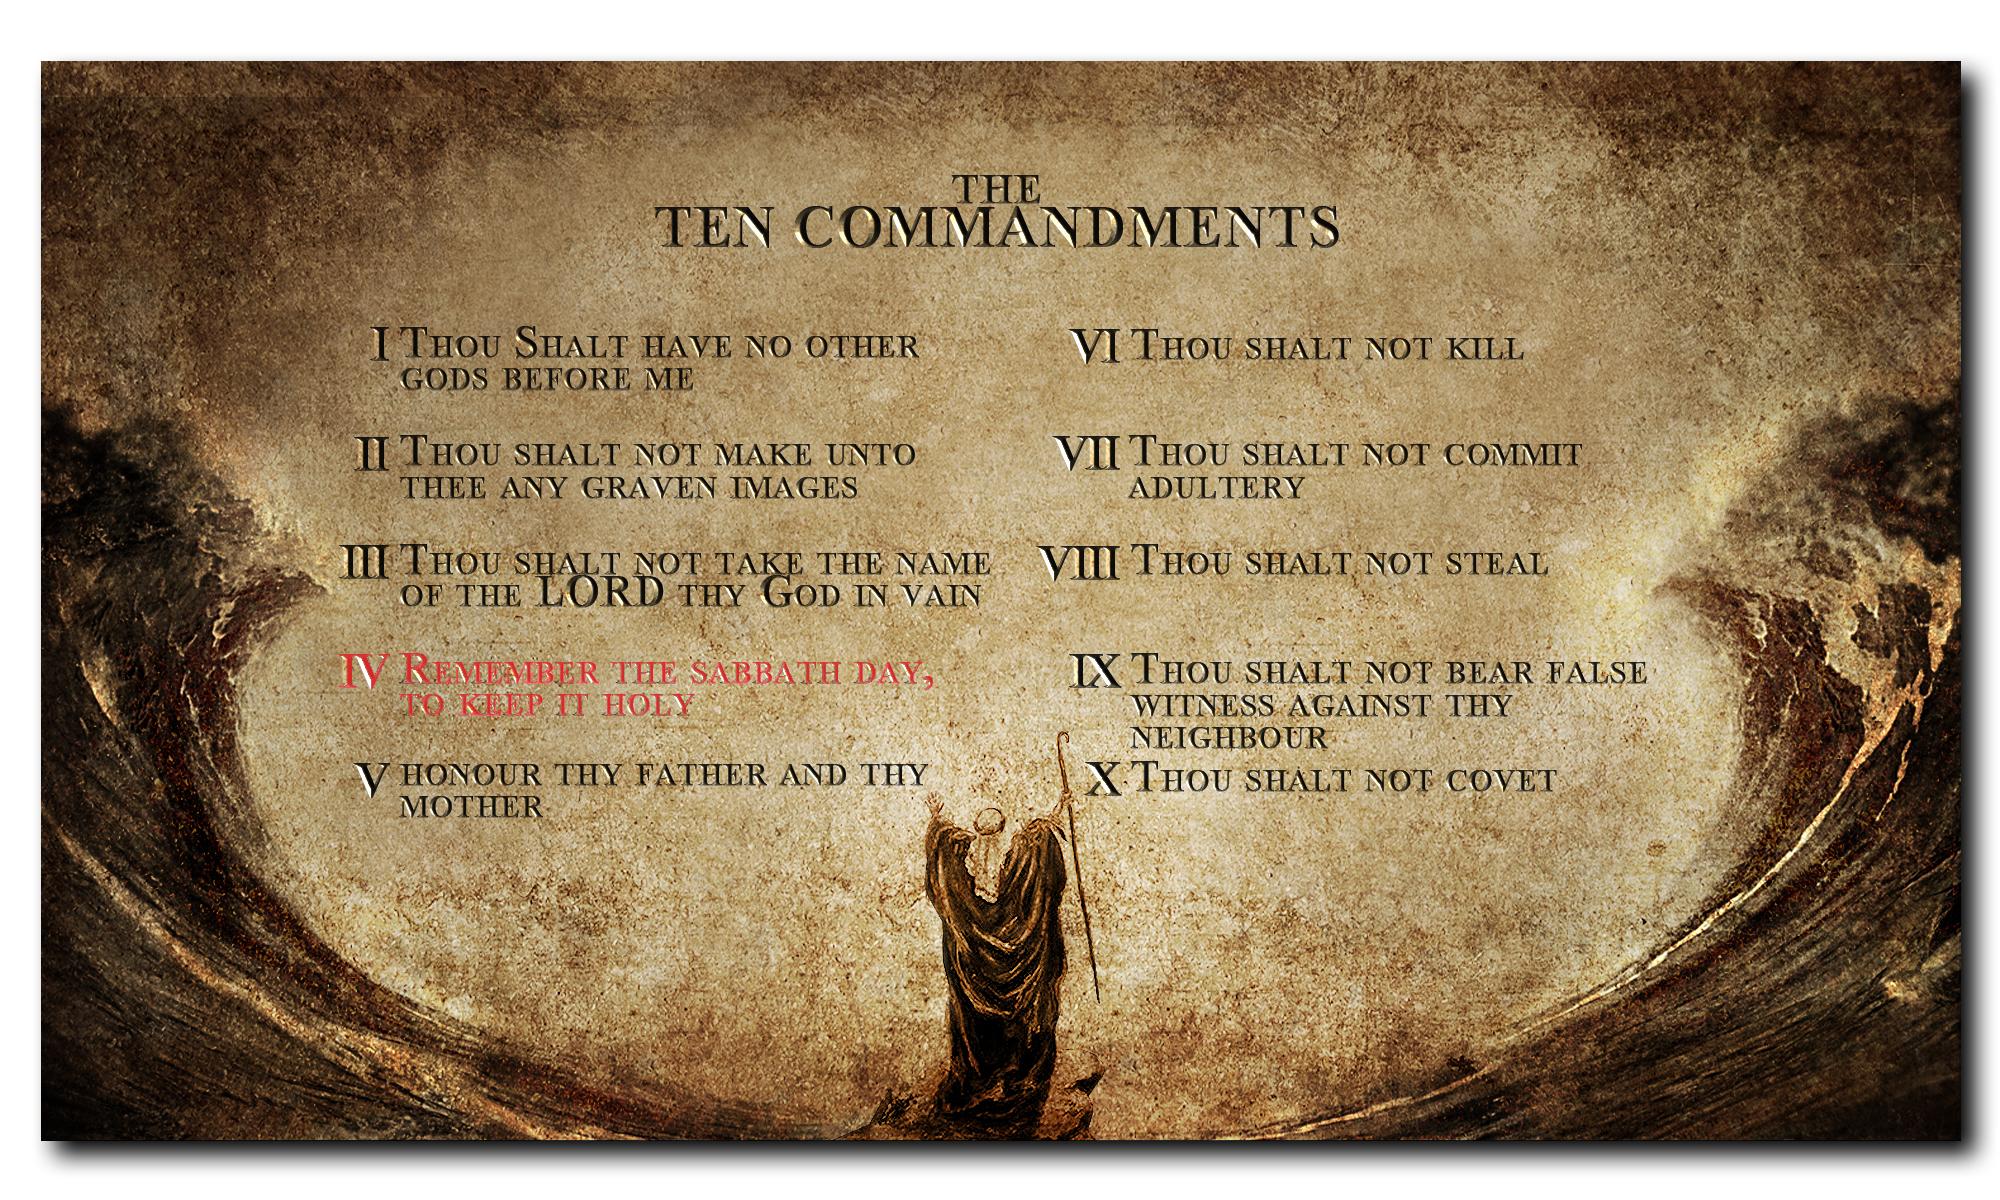 Moses Ten Commandments Wallpaper The Ten Commandments  फट शयर